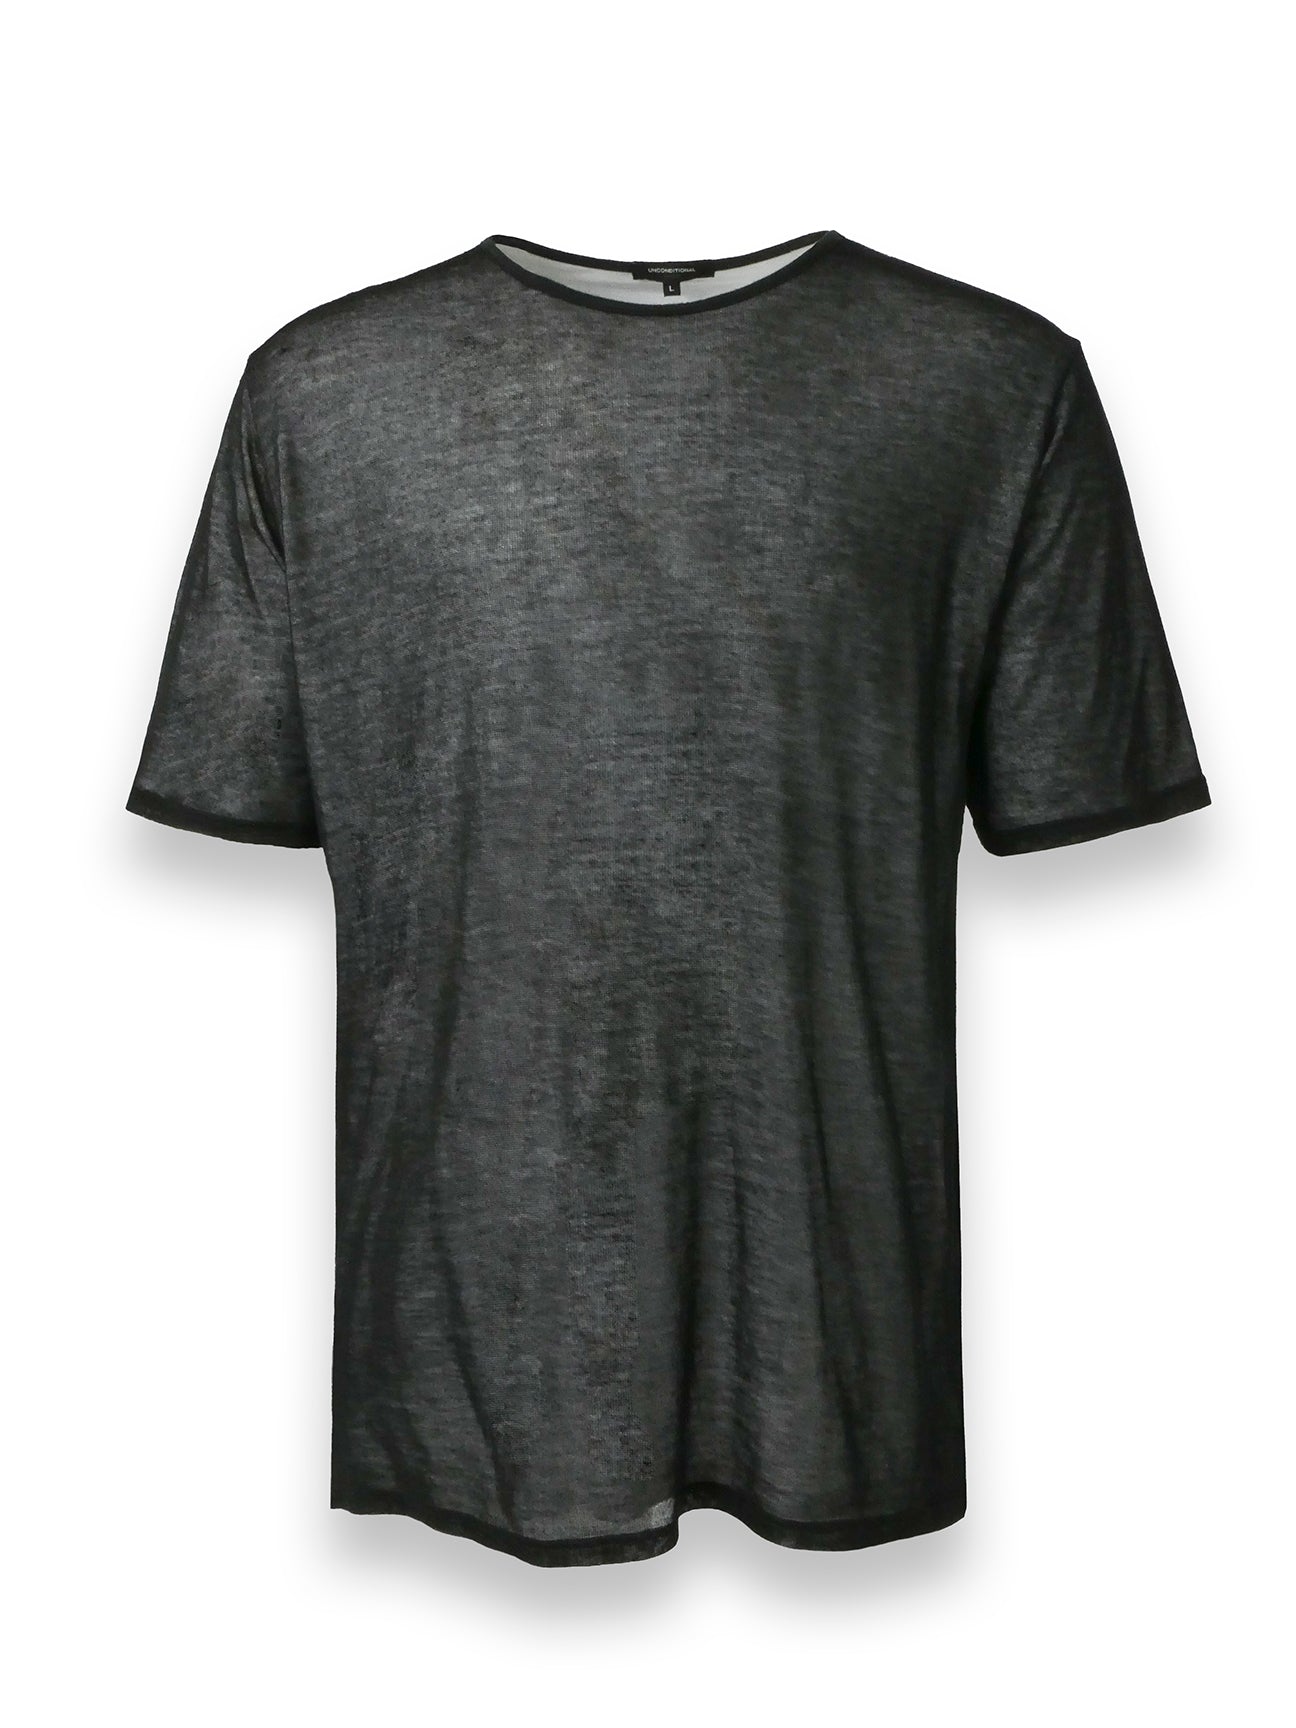 Black and White layered T-Shirt